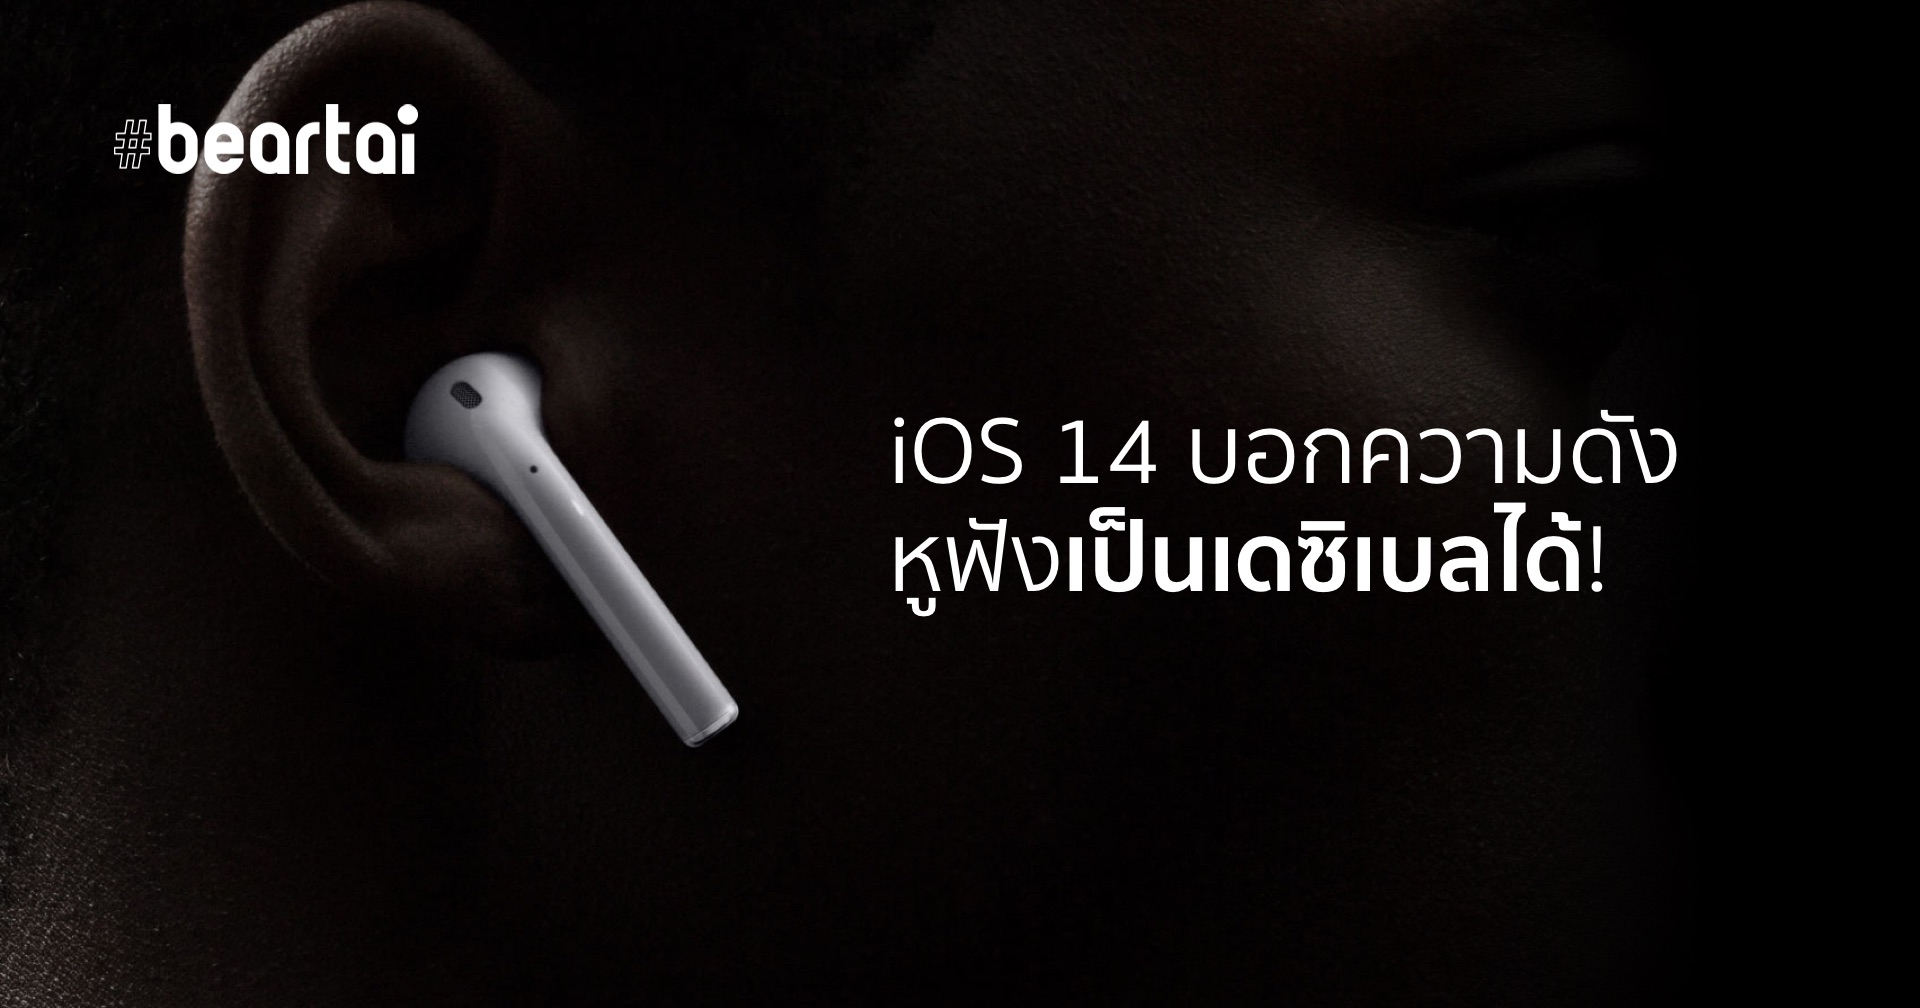 iOS 14 เพิ่มฟีเจอร์บอกความดังหูฟัง ป้องกันหูพังได้